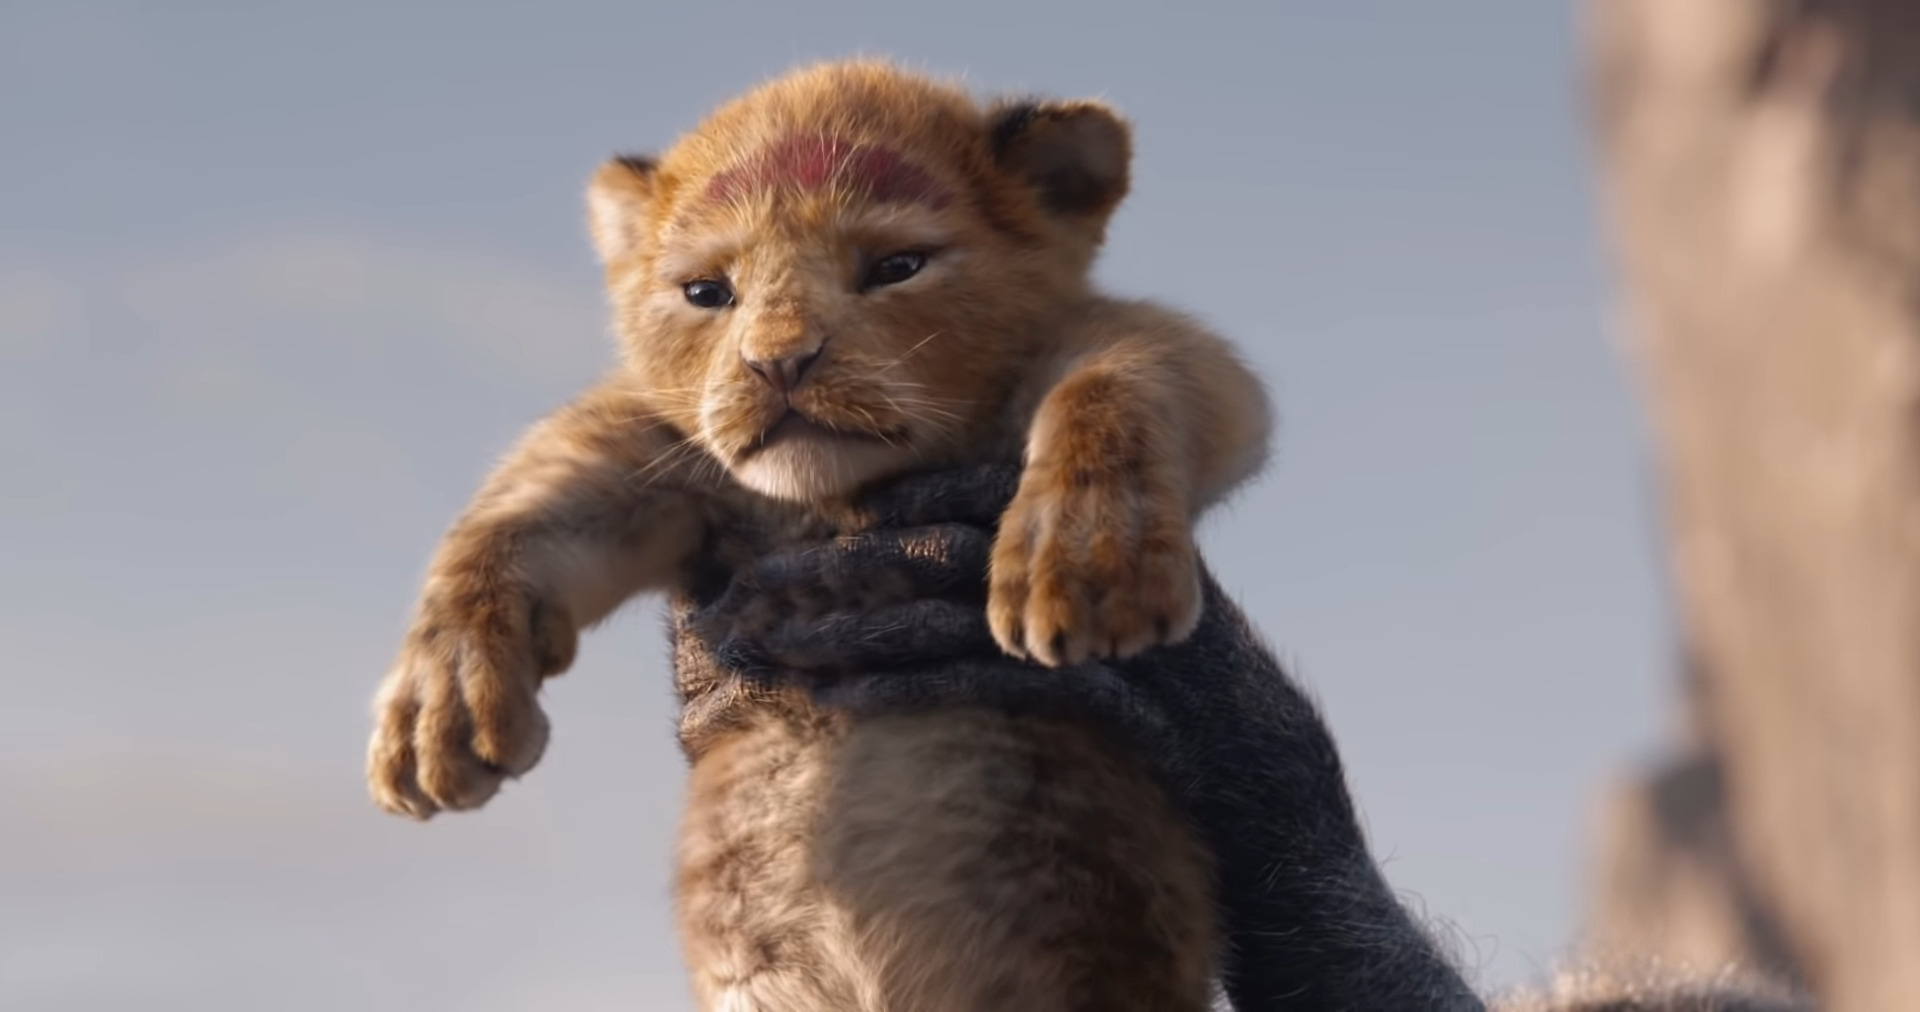 Le Roi Lion se dévoile dans une première bande-annonce - Numerama